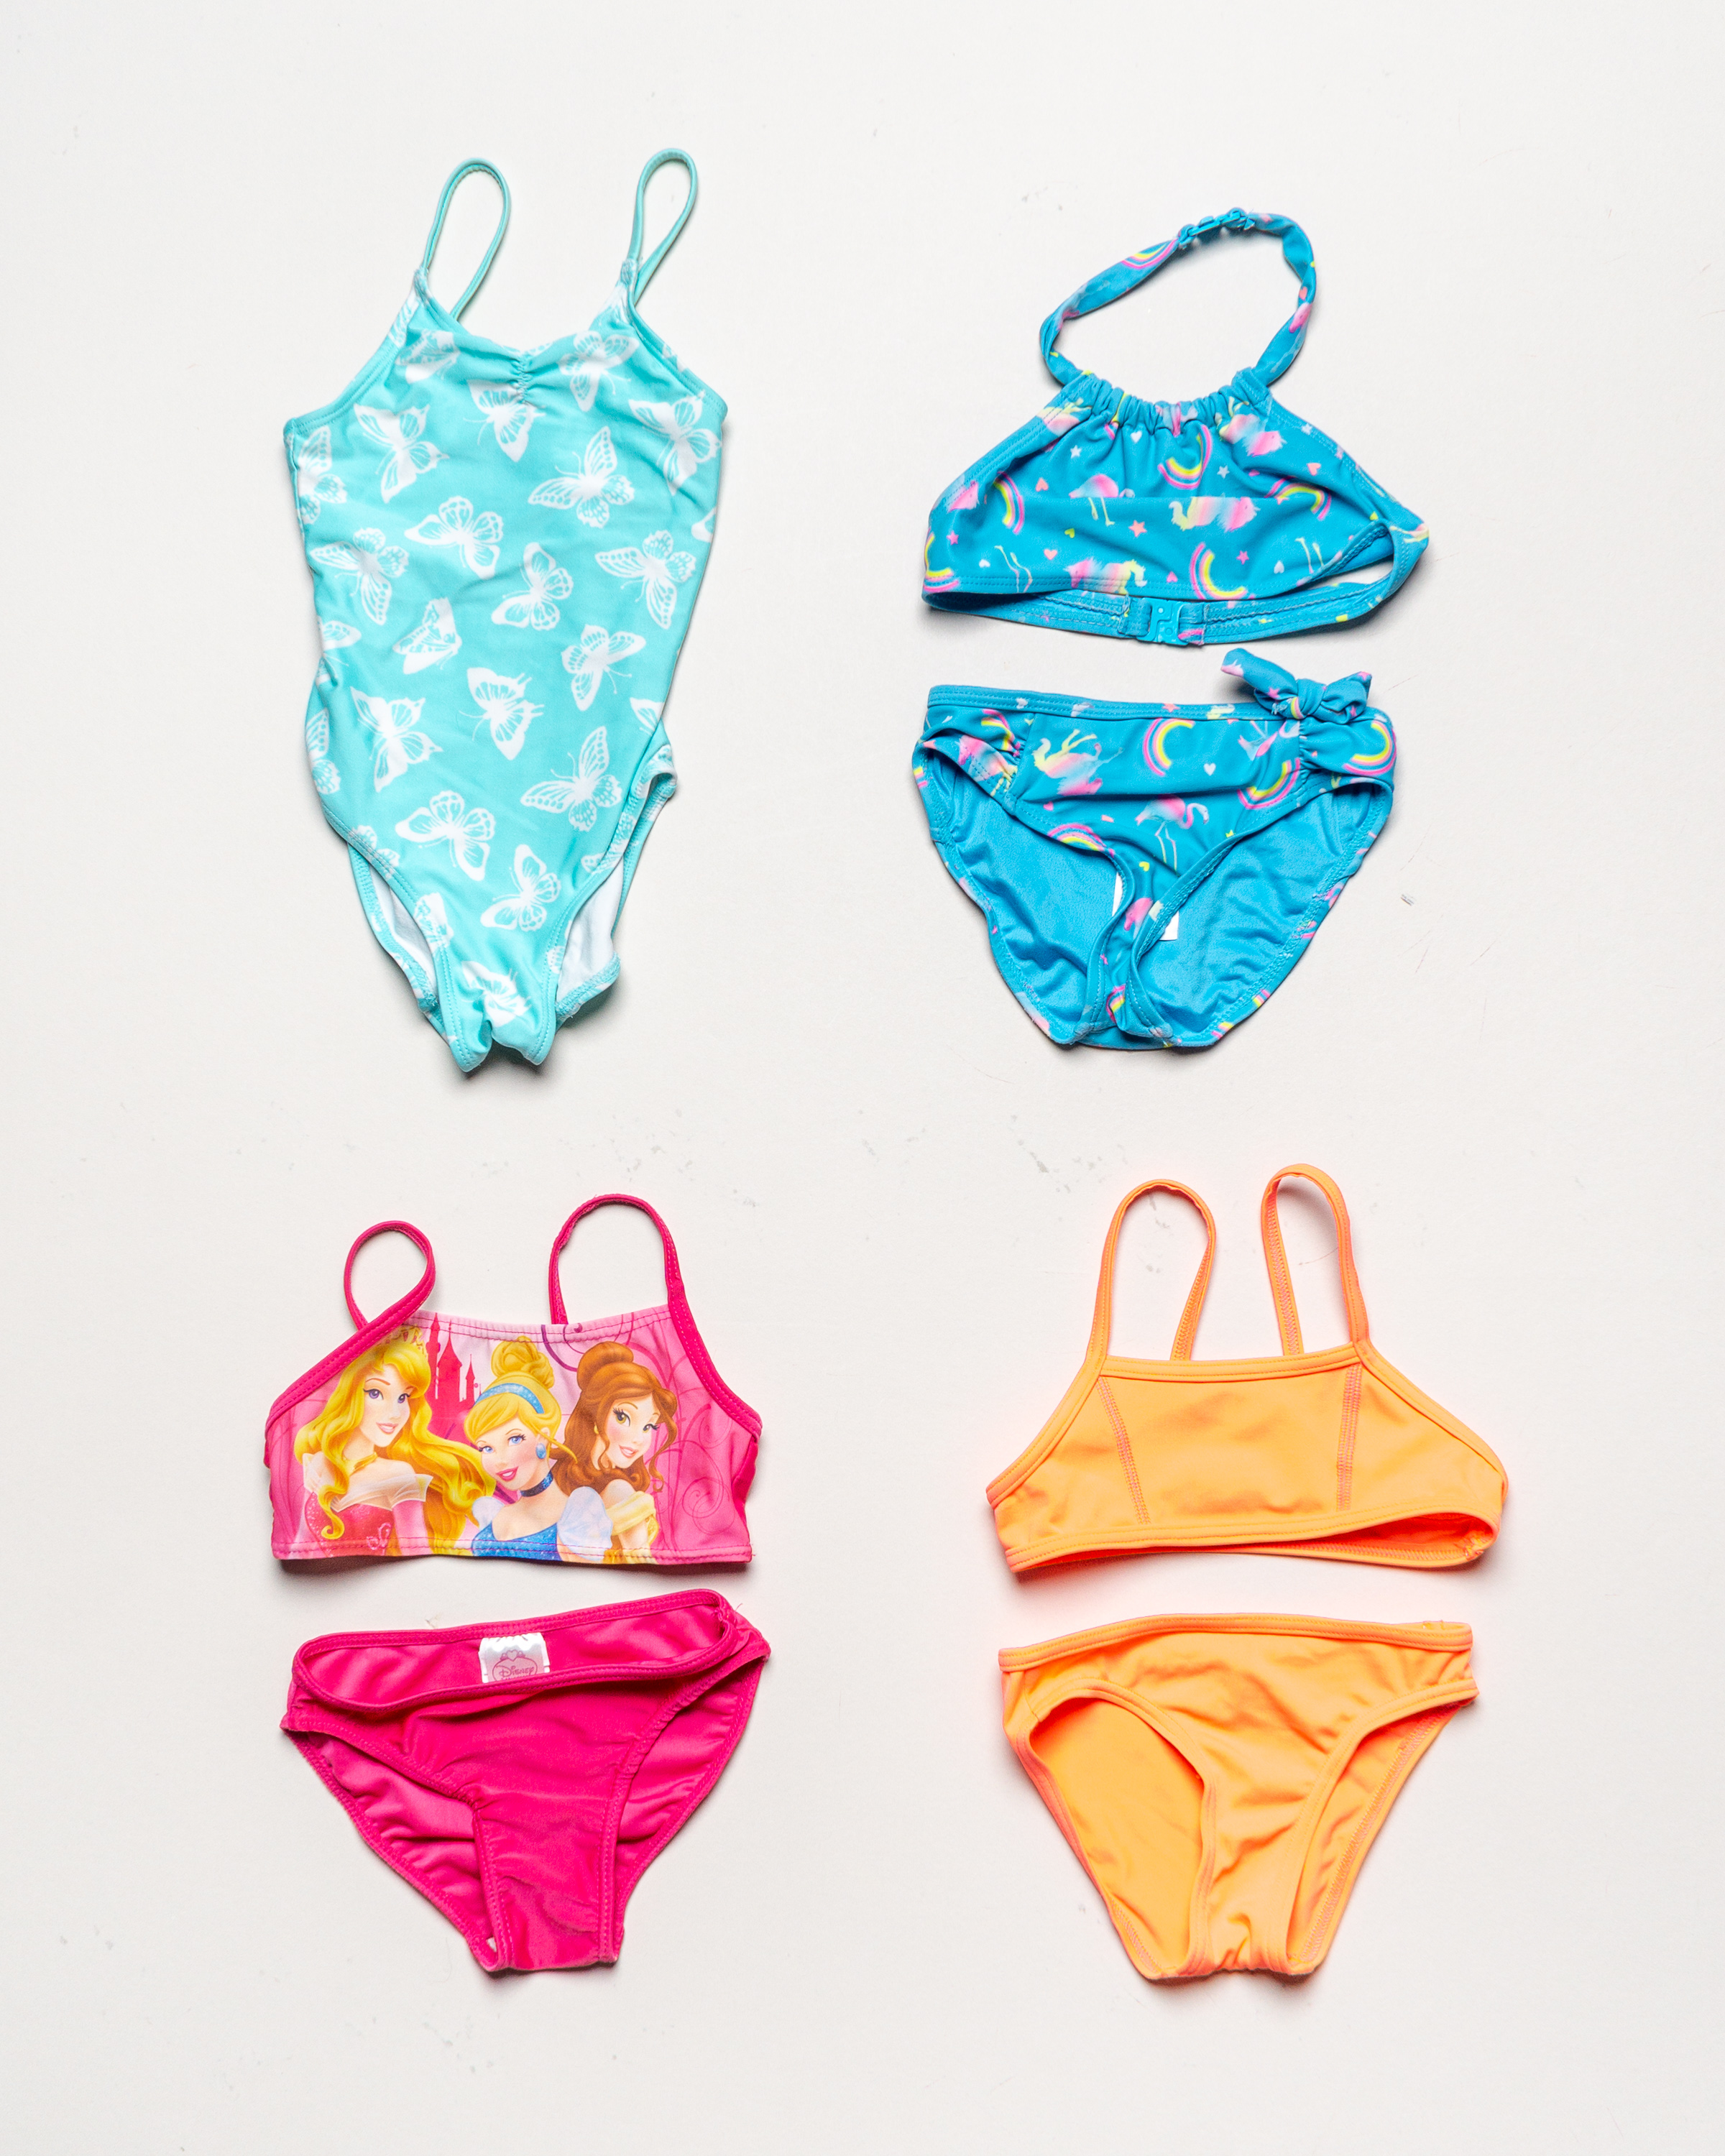 1x Badekleidung Gr. 92 – Schwimmsachen Badeanzug Bikini Disney Prinzessin Regenbogen Neon Pink